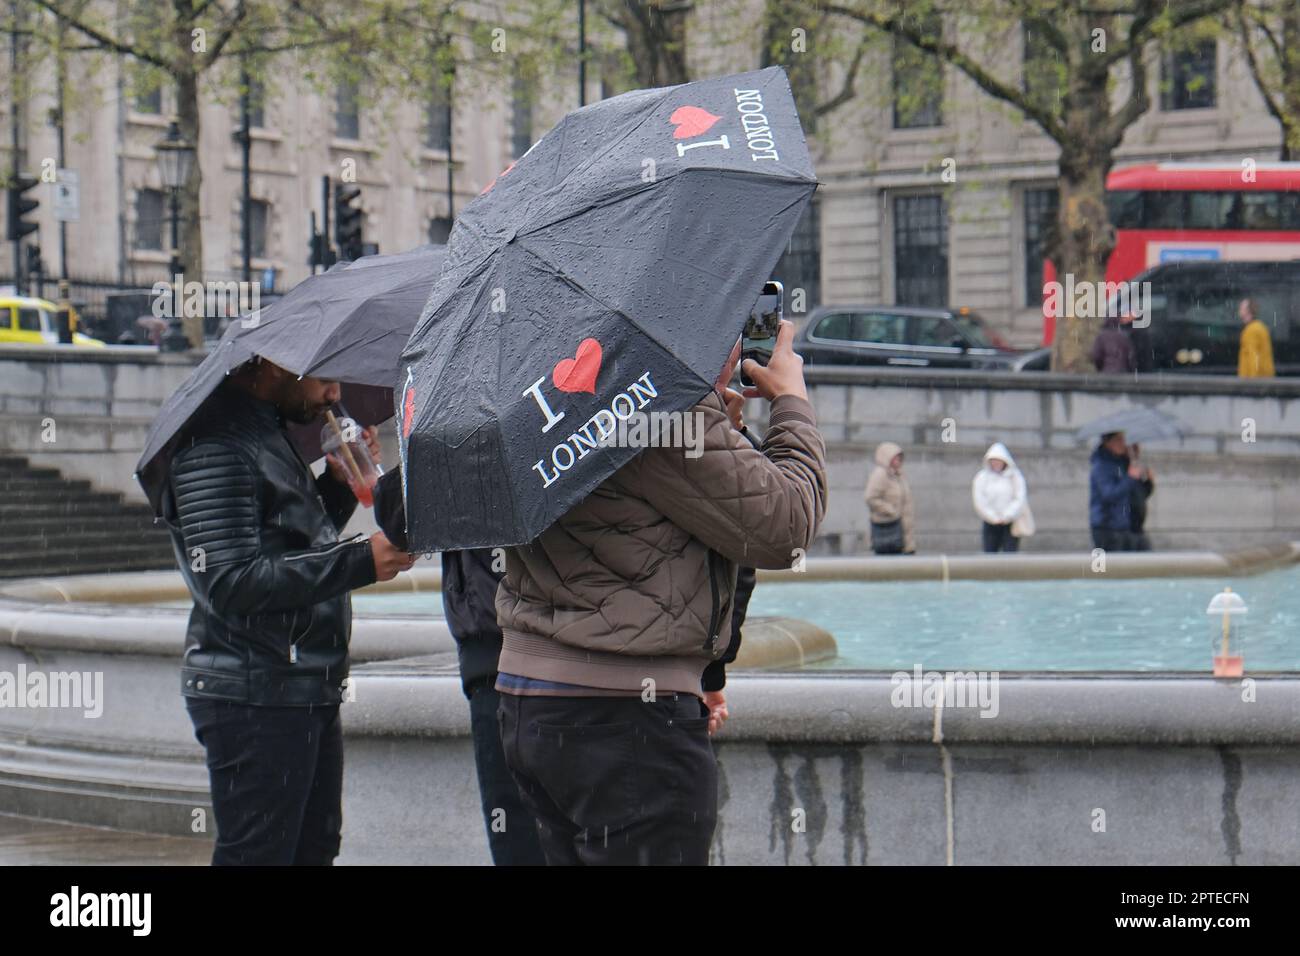 London, Großbritannien. Zwei Touristen fotografieren am Trafalgar Square, während sie sich unter den Sonnenschirmen von I Heart London verstecken. Stockfoto